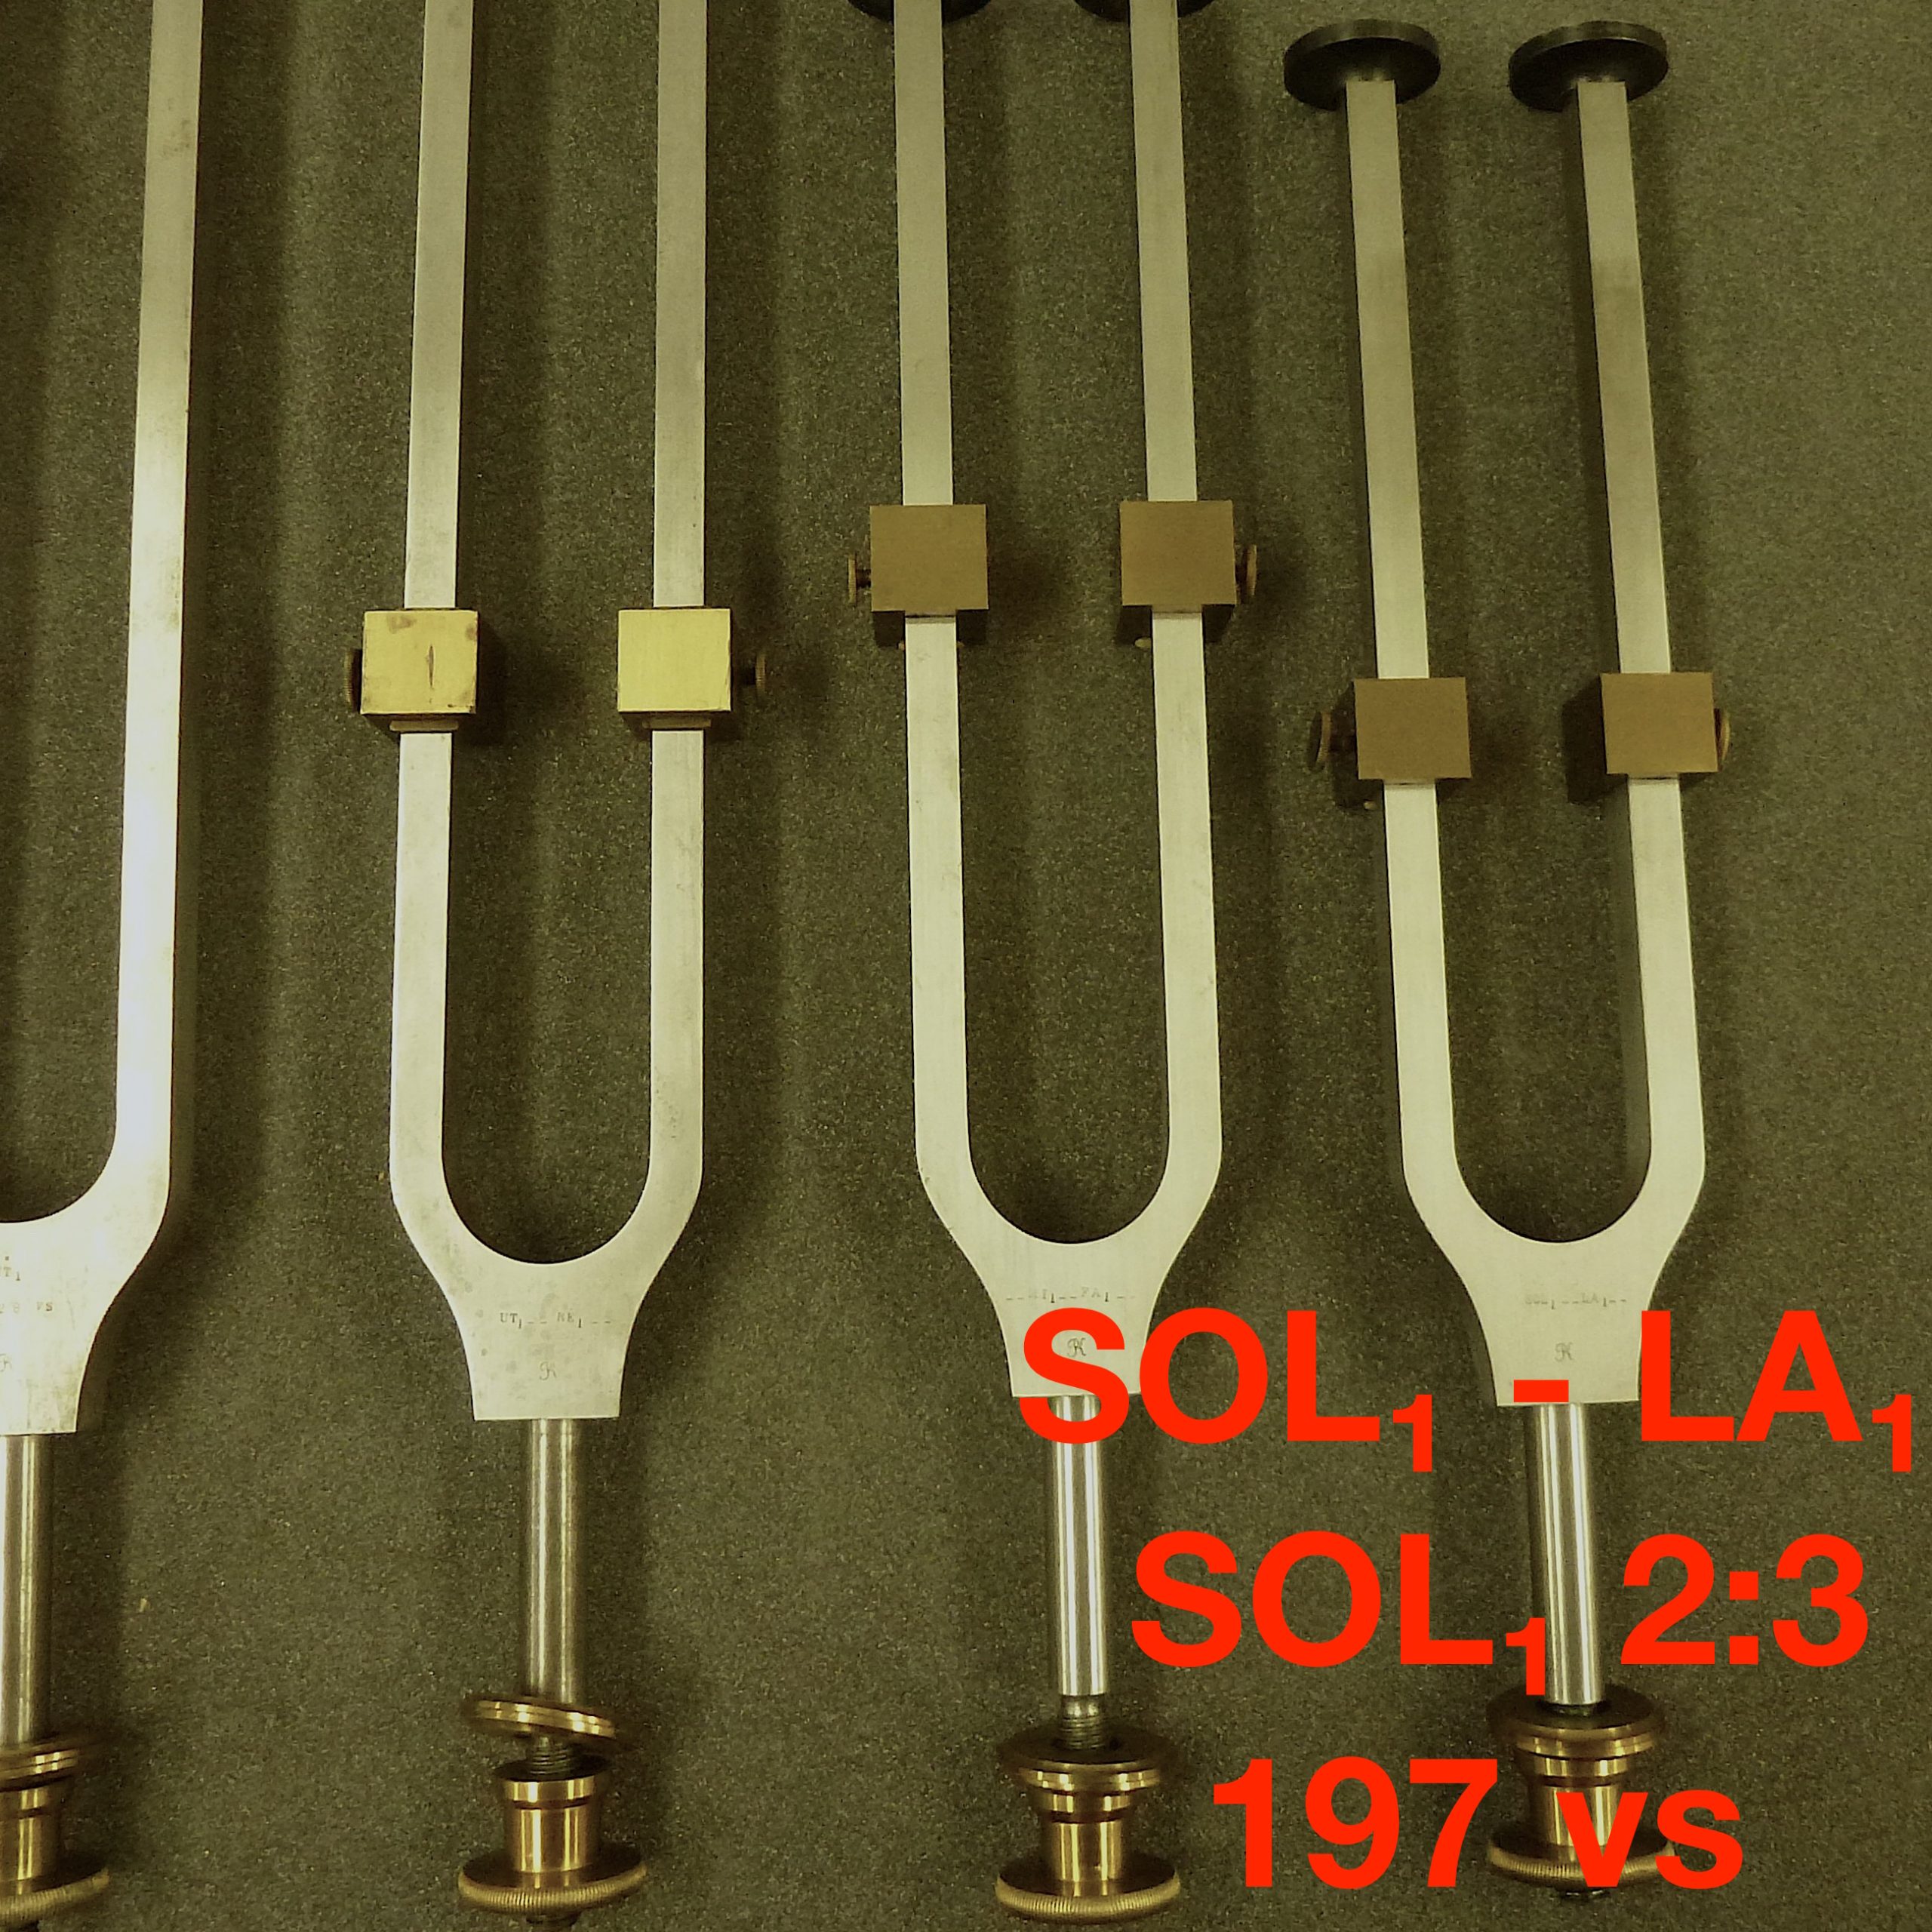 Tuning fork by Dr. R. König: SOL₁ - LA₁: SOL₁ 2:3